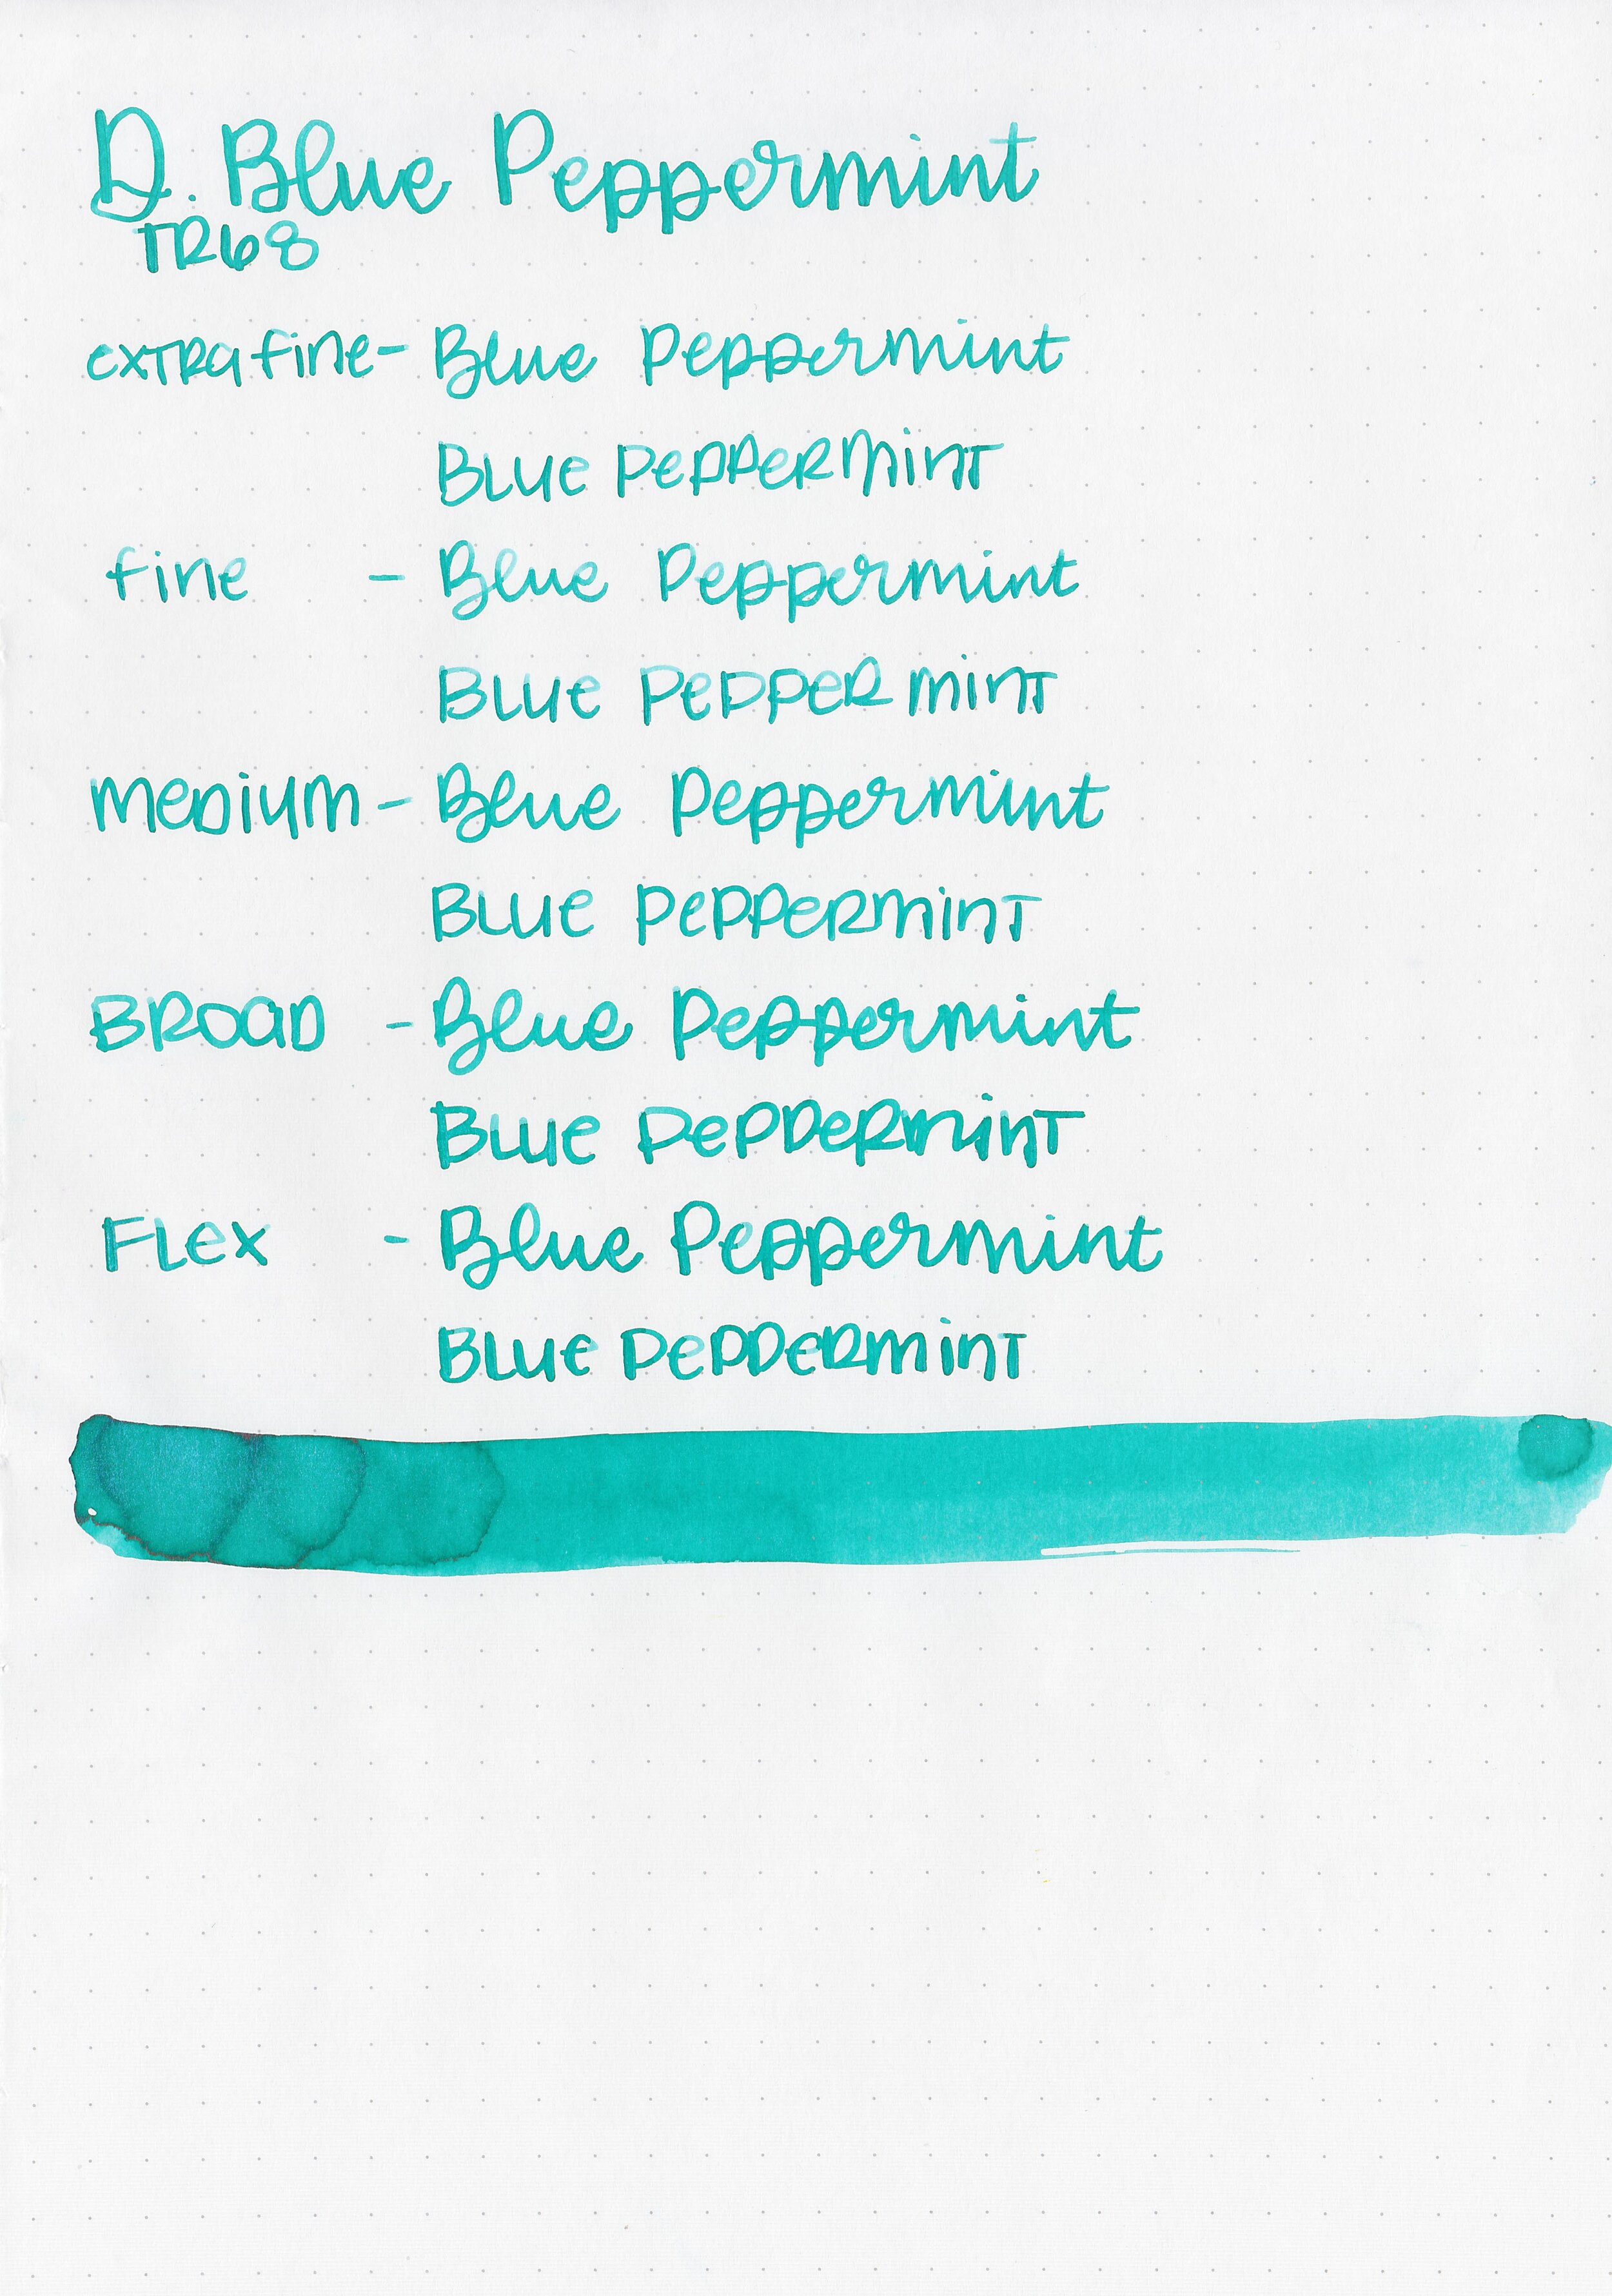 d-blue-peppermint-7.jpg